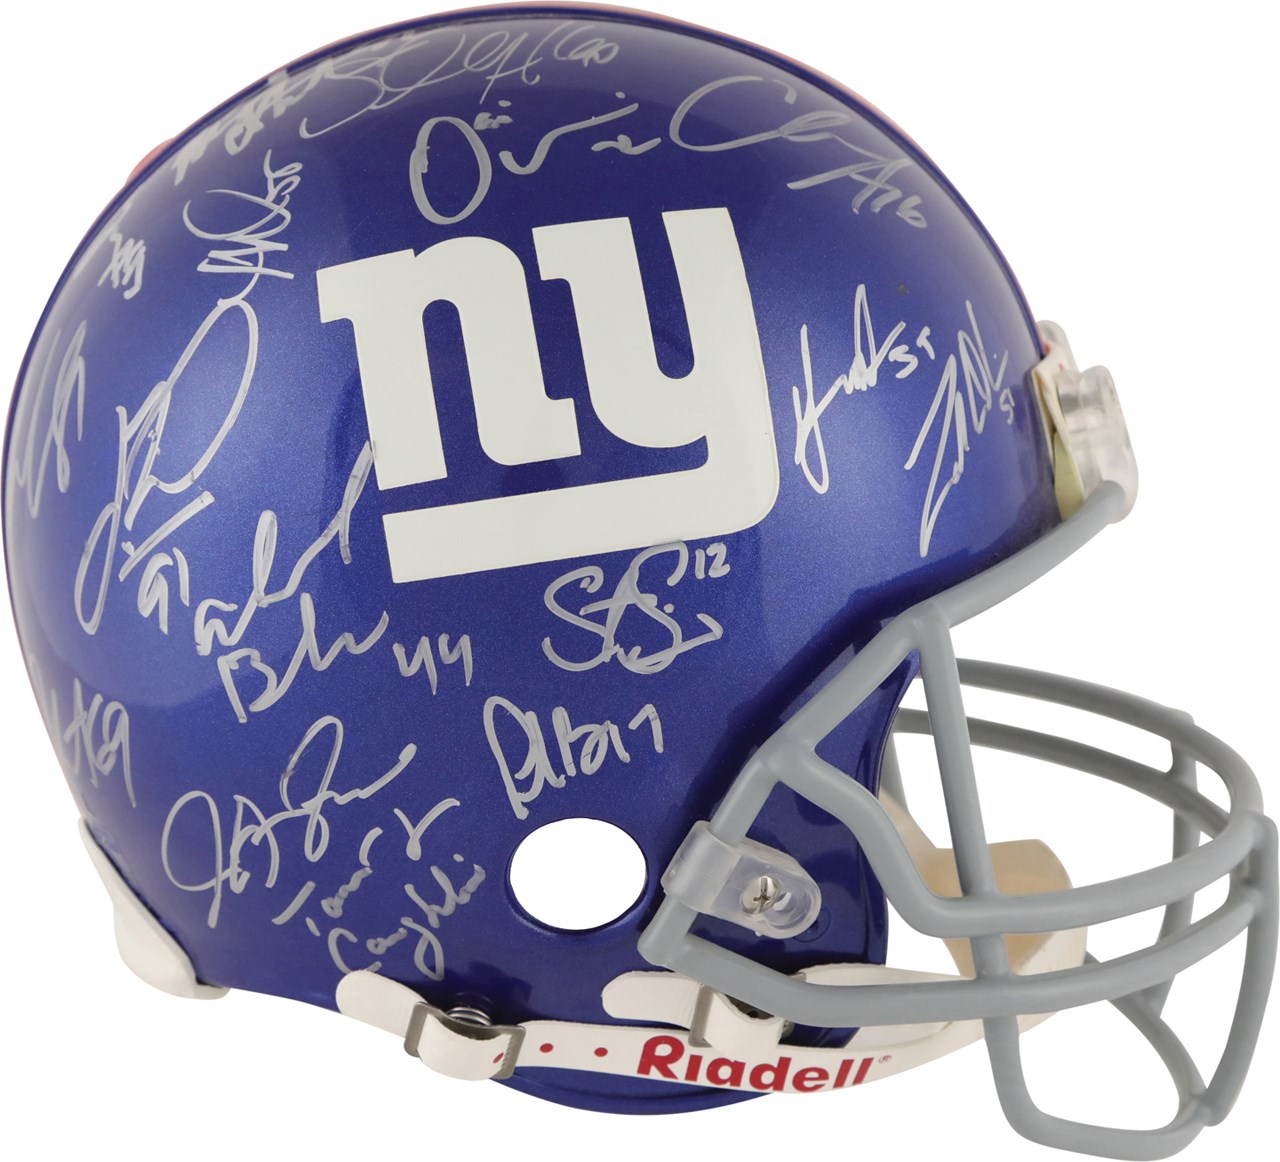 - 2007 New York Giants Super Bowl XLII Champions Team Signed Full Size Helmet (Steiner)